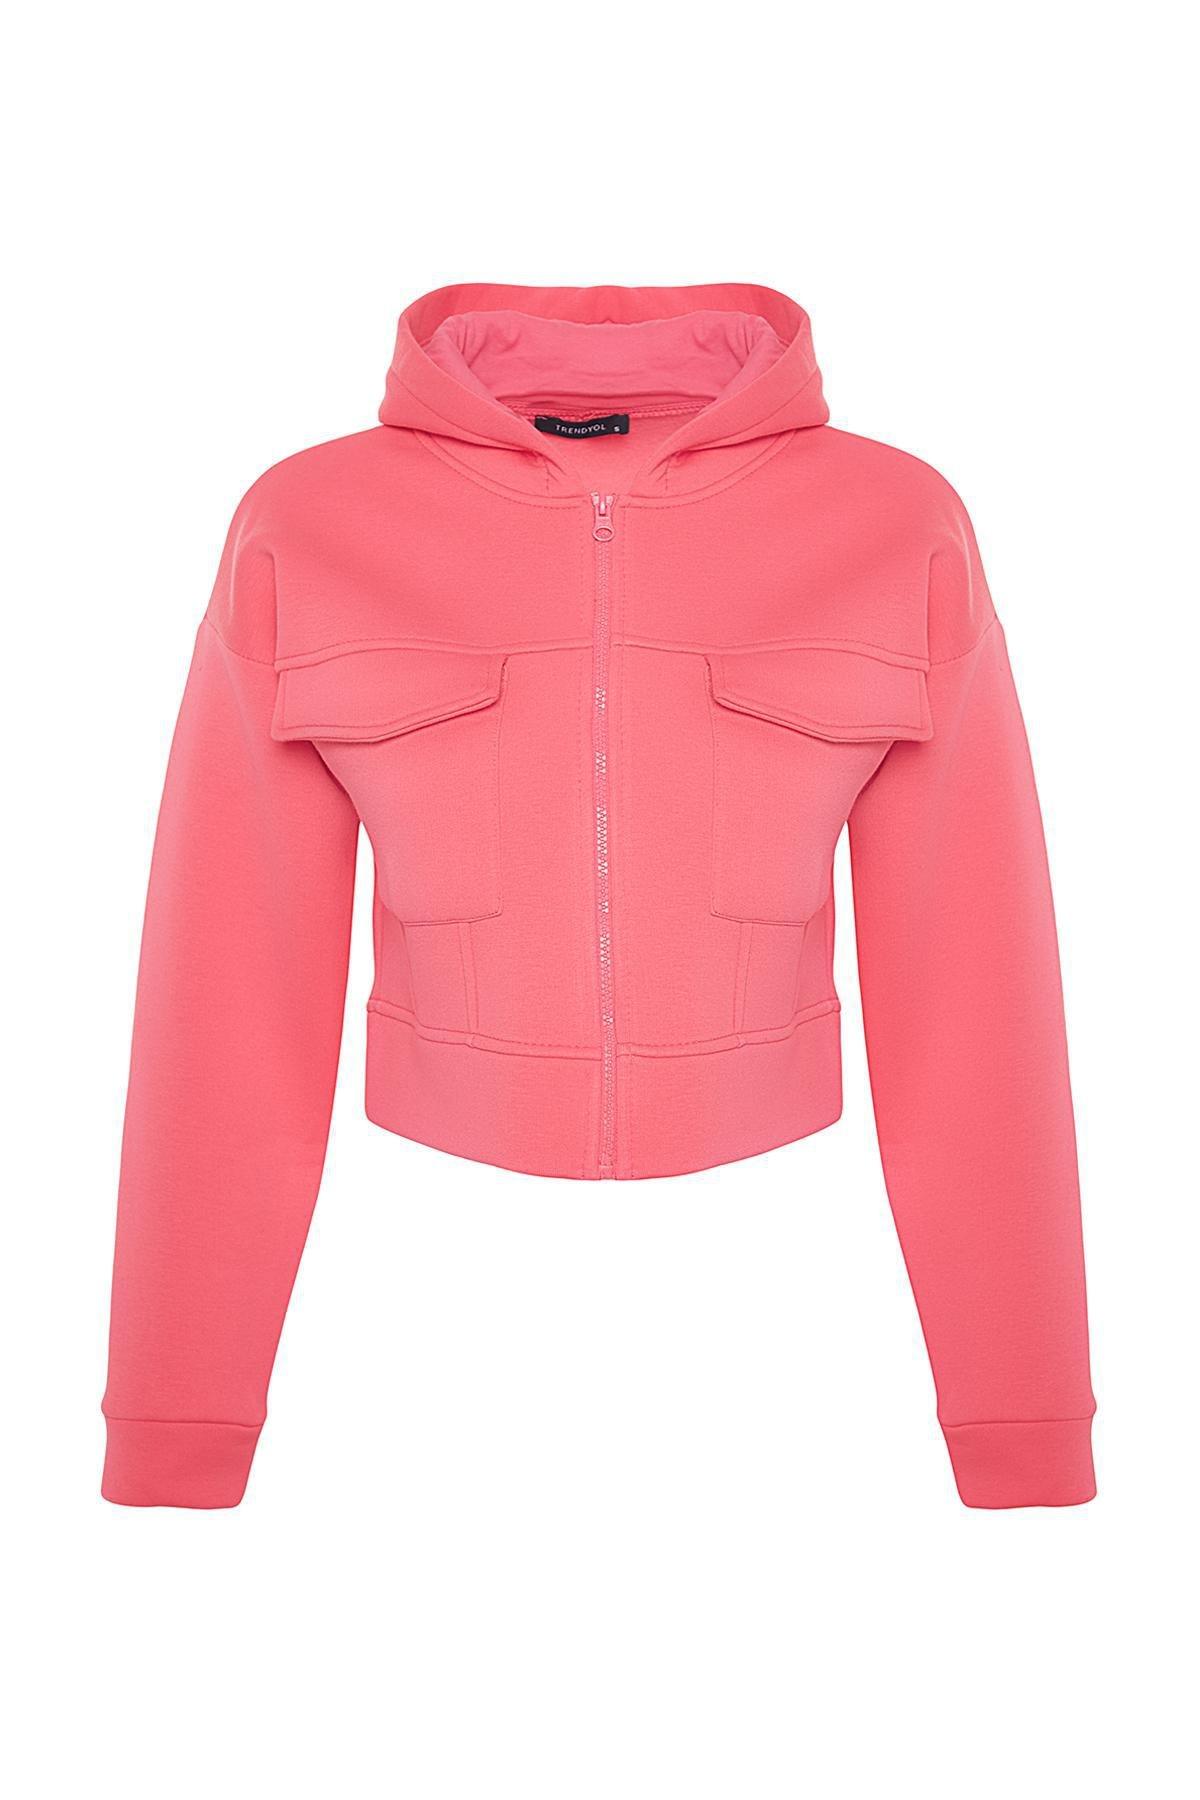 Trendyol - Pink Casual Fit Crop Sweatshirt